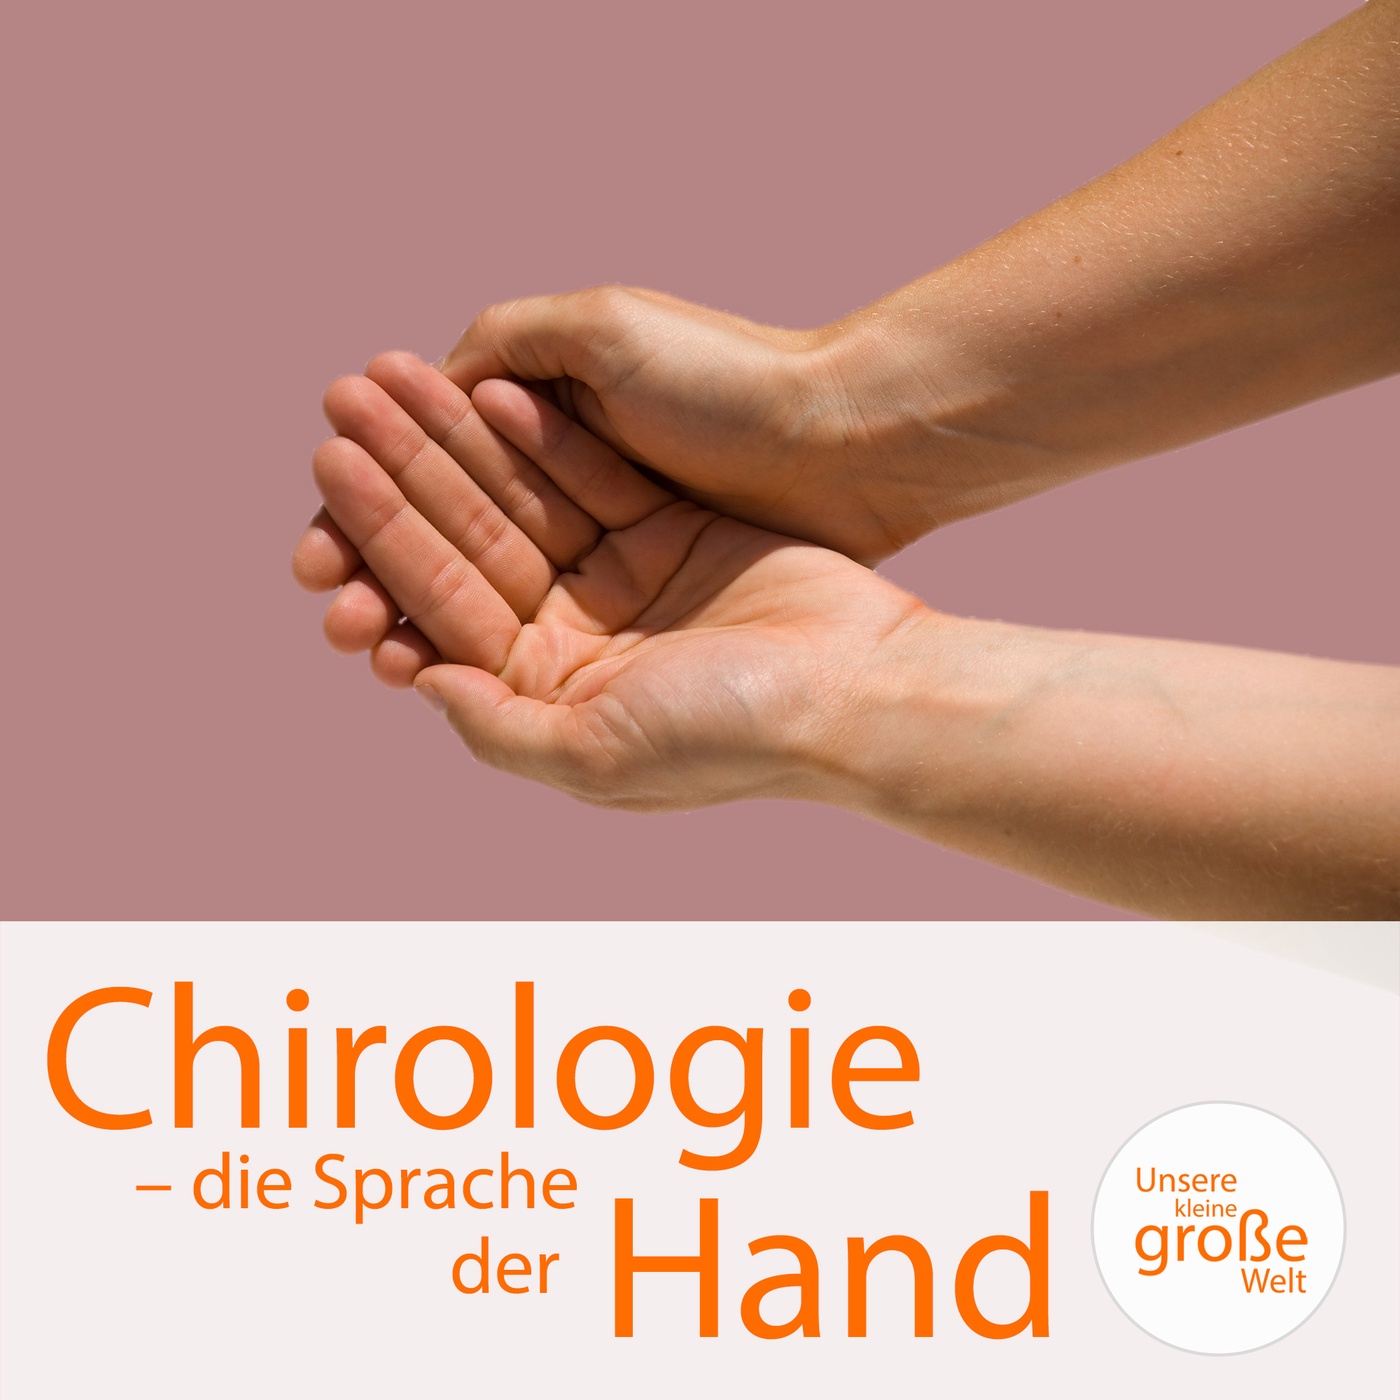 Chirologie – die Sprache der Hand